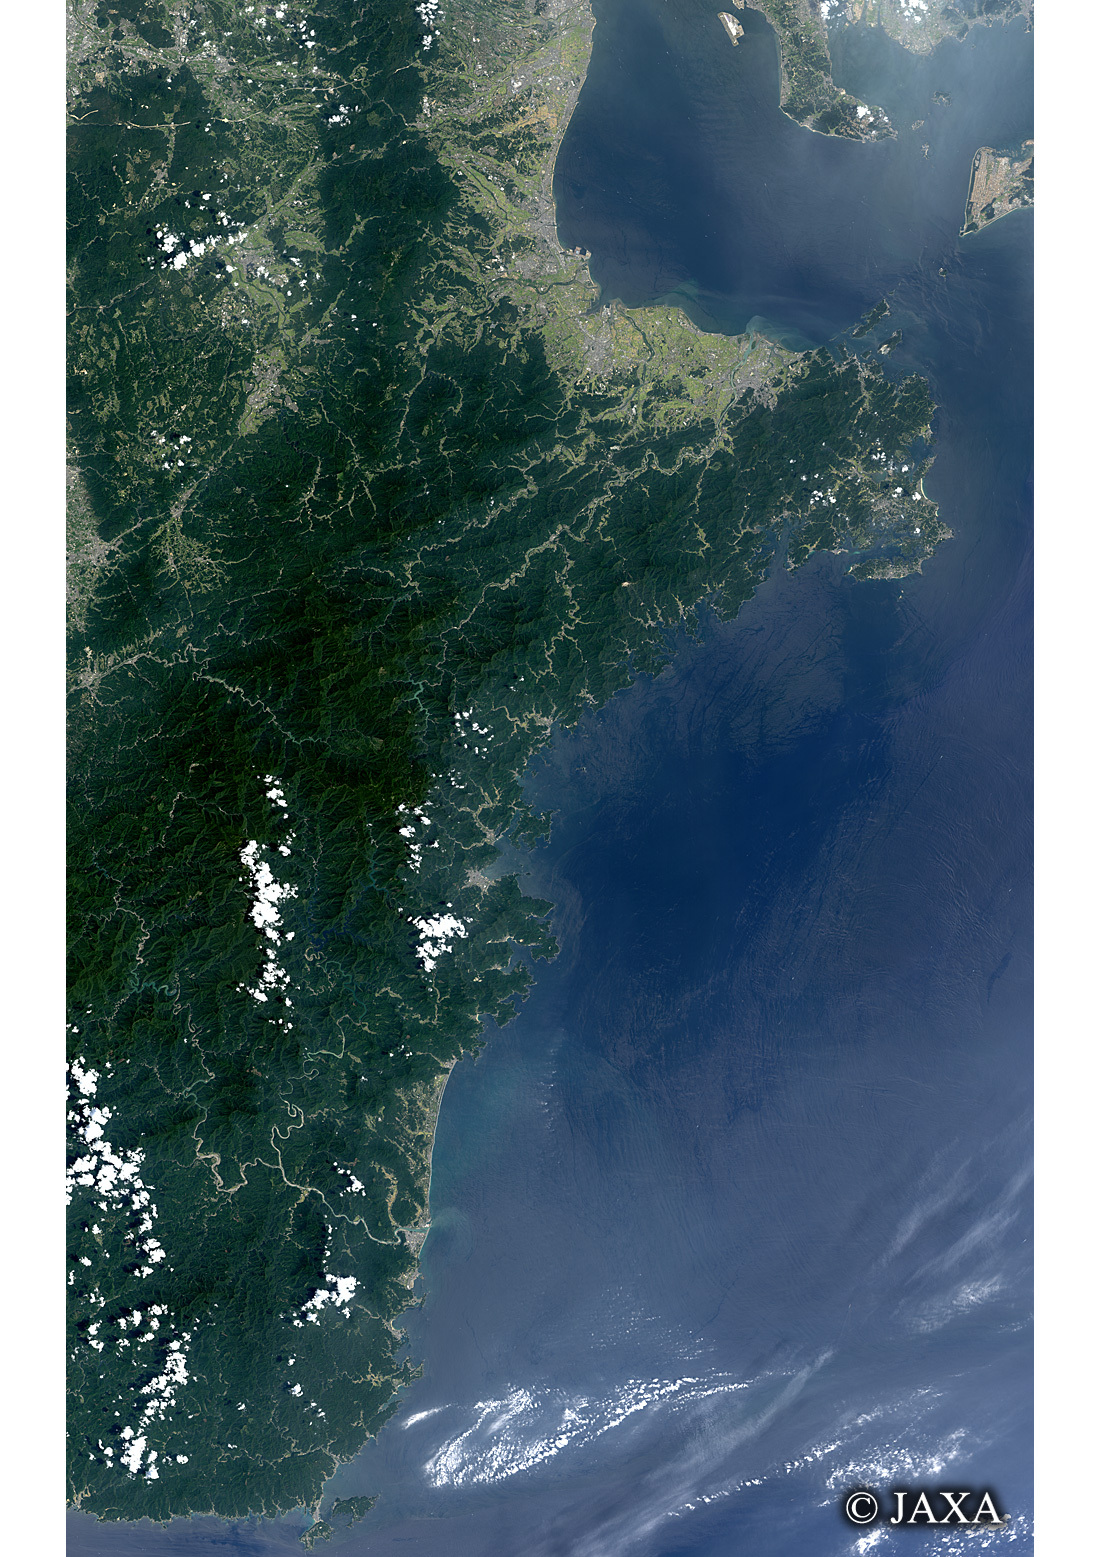 だいちから見た日本の都市 熊野古道:衛星画像